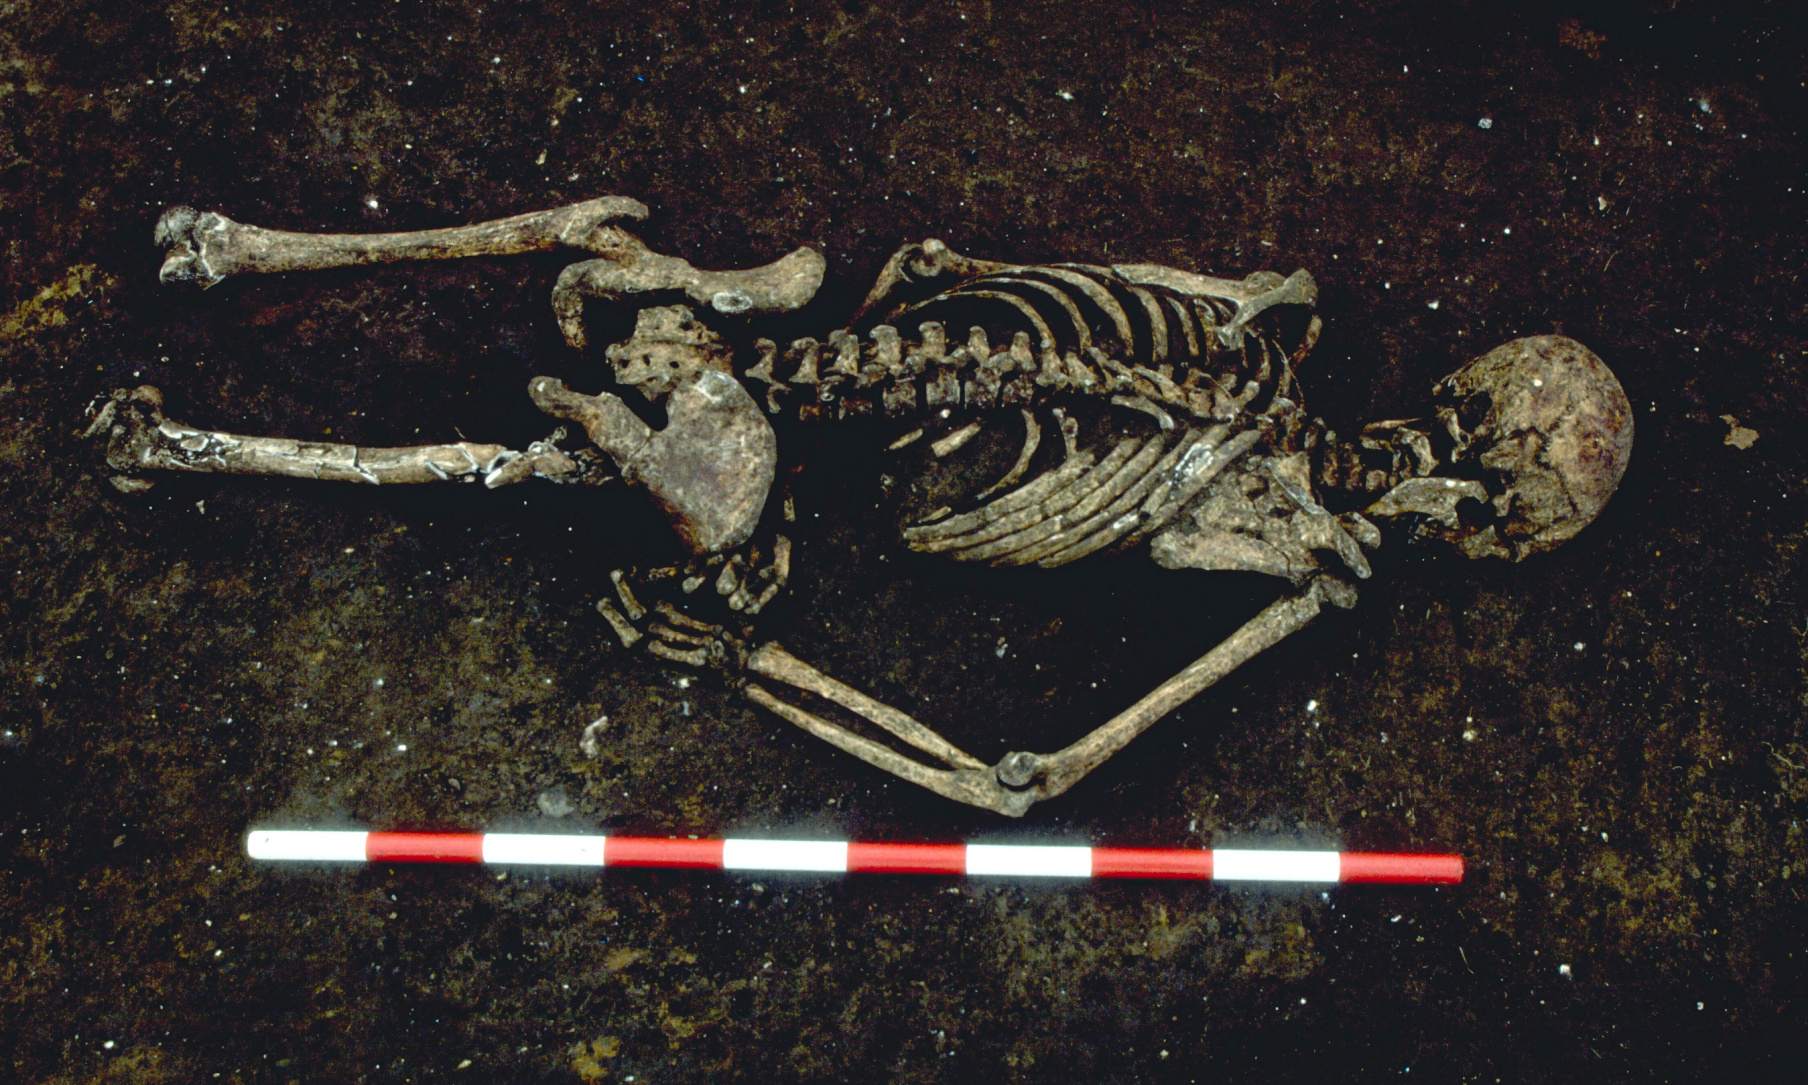 1,500 سال پراڻو کنڊر هڪ غير معمولي زاويه تي ساڄي هٿ مڙيل منهن سان مليو. مطالعي جي محققن جو چوڻ آهي ته ٿي سگهي ٿو ته هن کي بند ڪيو ويو آهي جڏهن هو مري ويو. هن جو هيٺيون جسم جديد دور جي ترقي جي ڪري تباهه ٿي ويو.